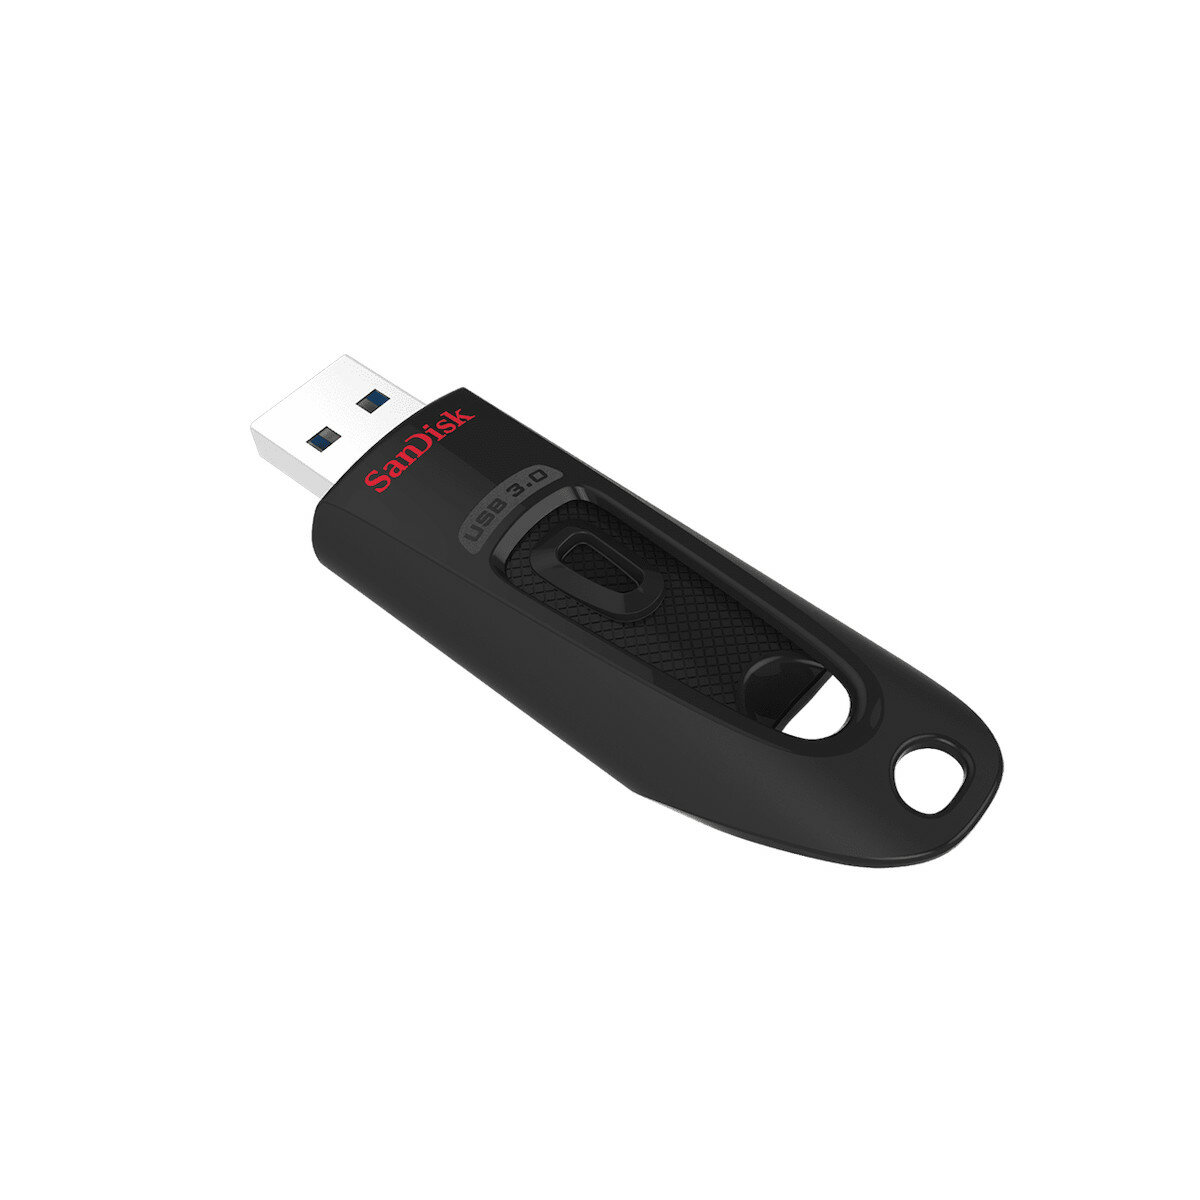 Pendrive SanDisk Ultra USB 3.0 256 GB widoczny tyłem z wysuniętym złączem